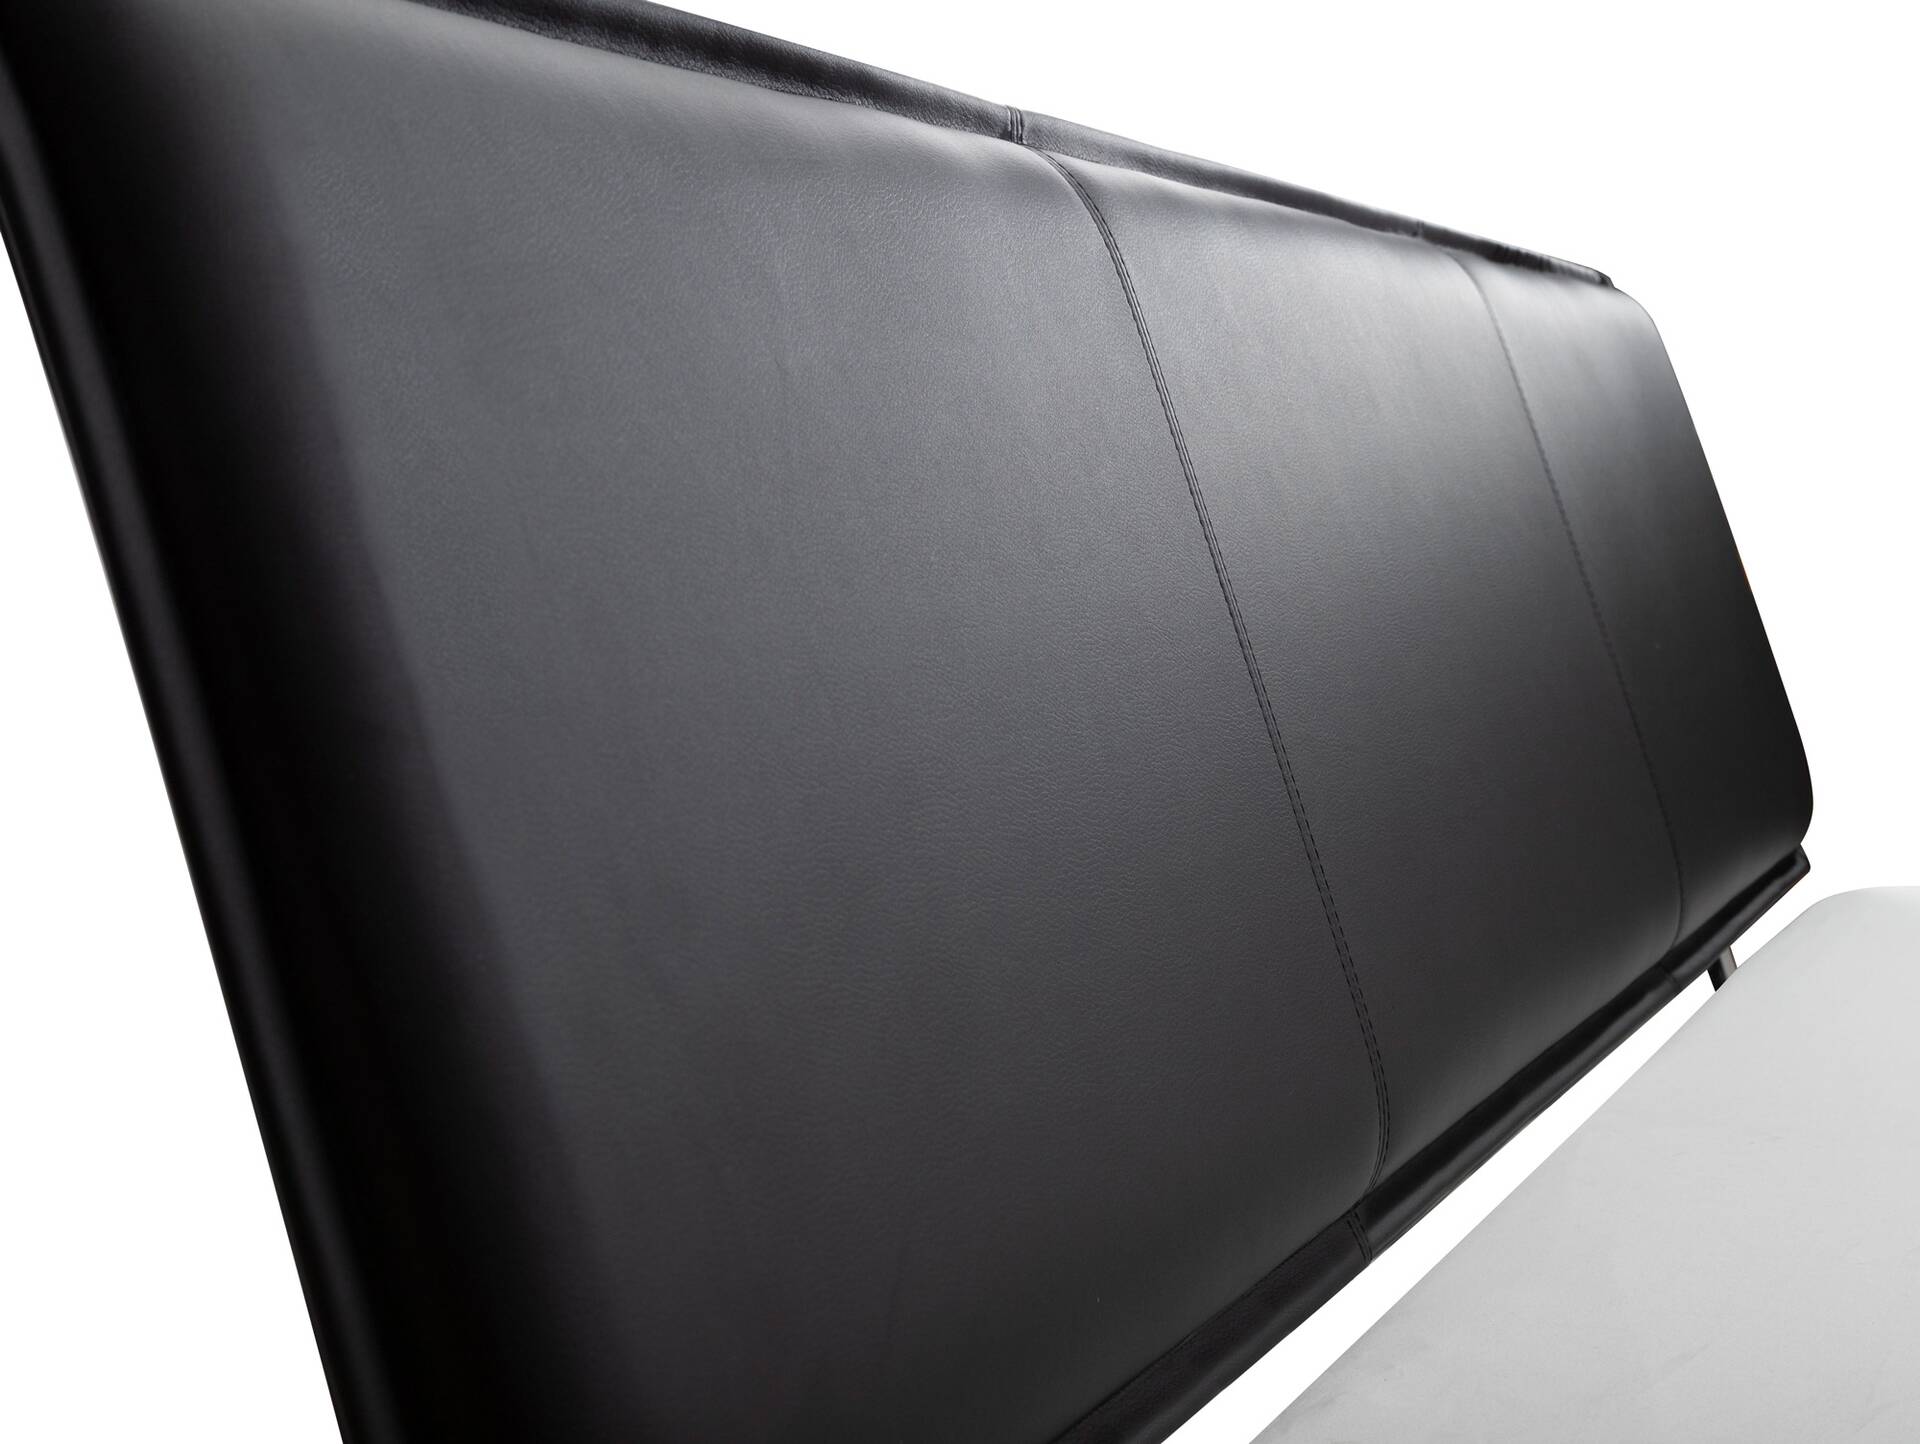 LUKY Bett Metallfuß, mit Polsterkopfteil, Material Massivholz, Fichte massiv 160 x 220 cm | weiss | Kunstleder Schwarz